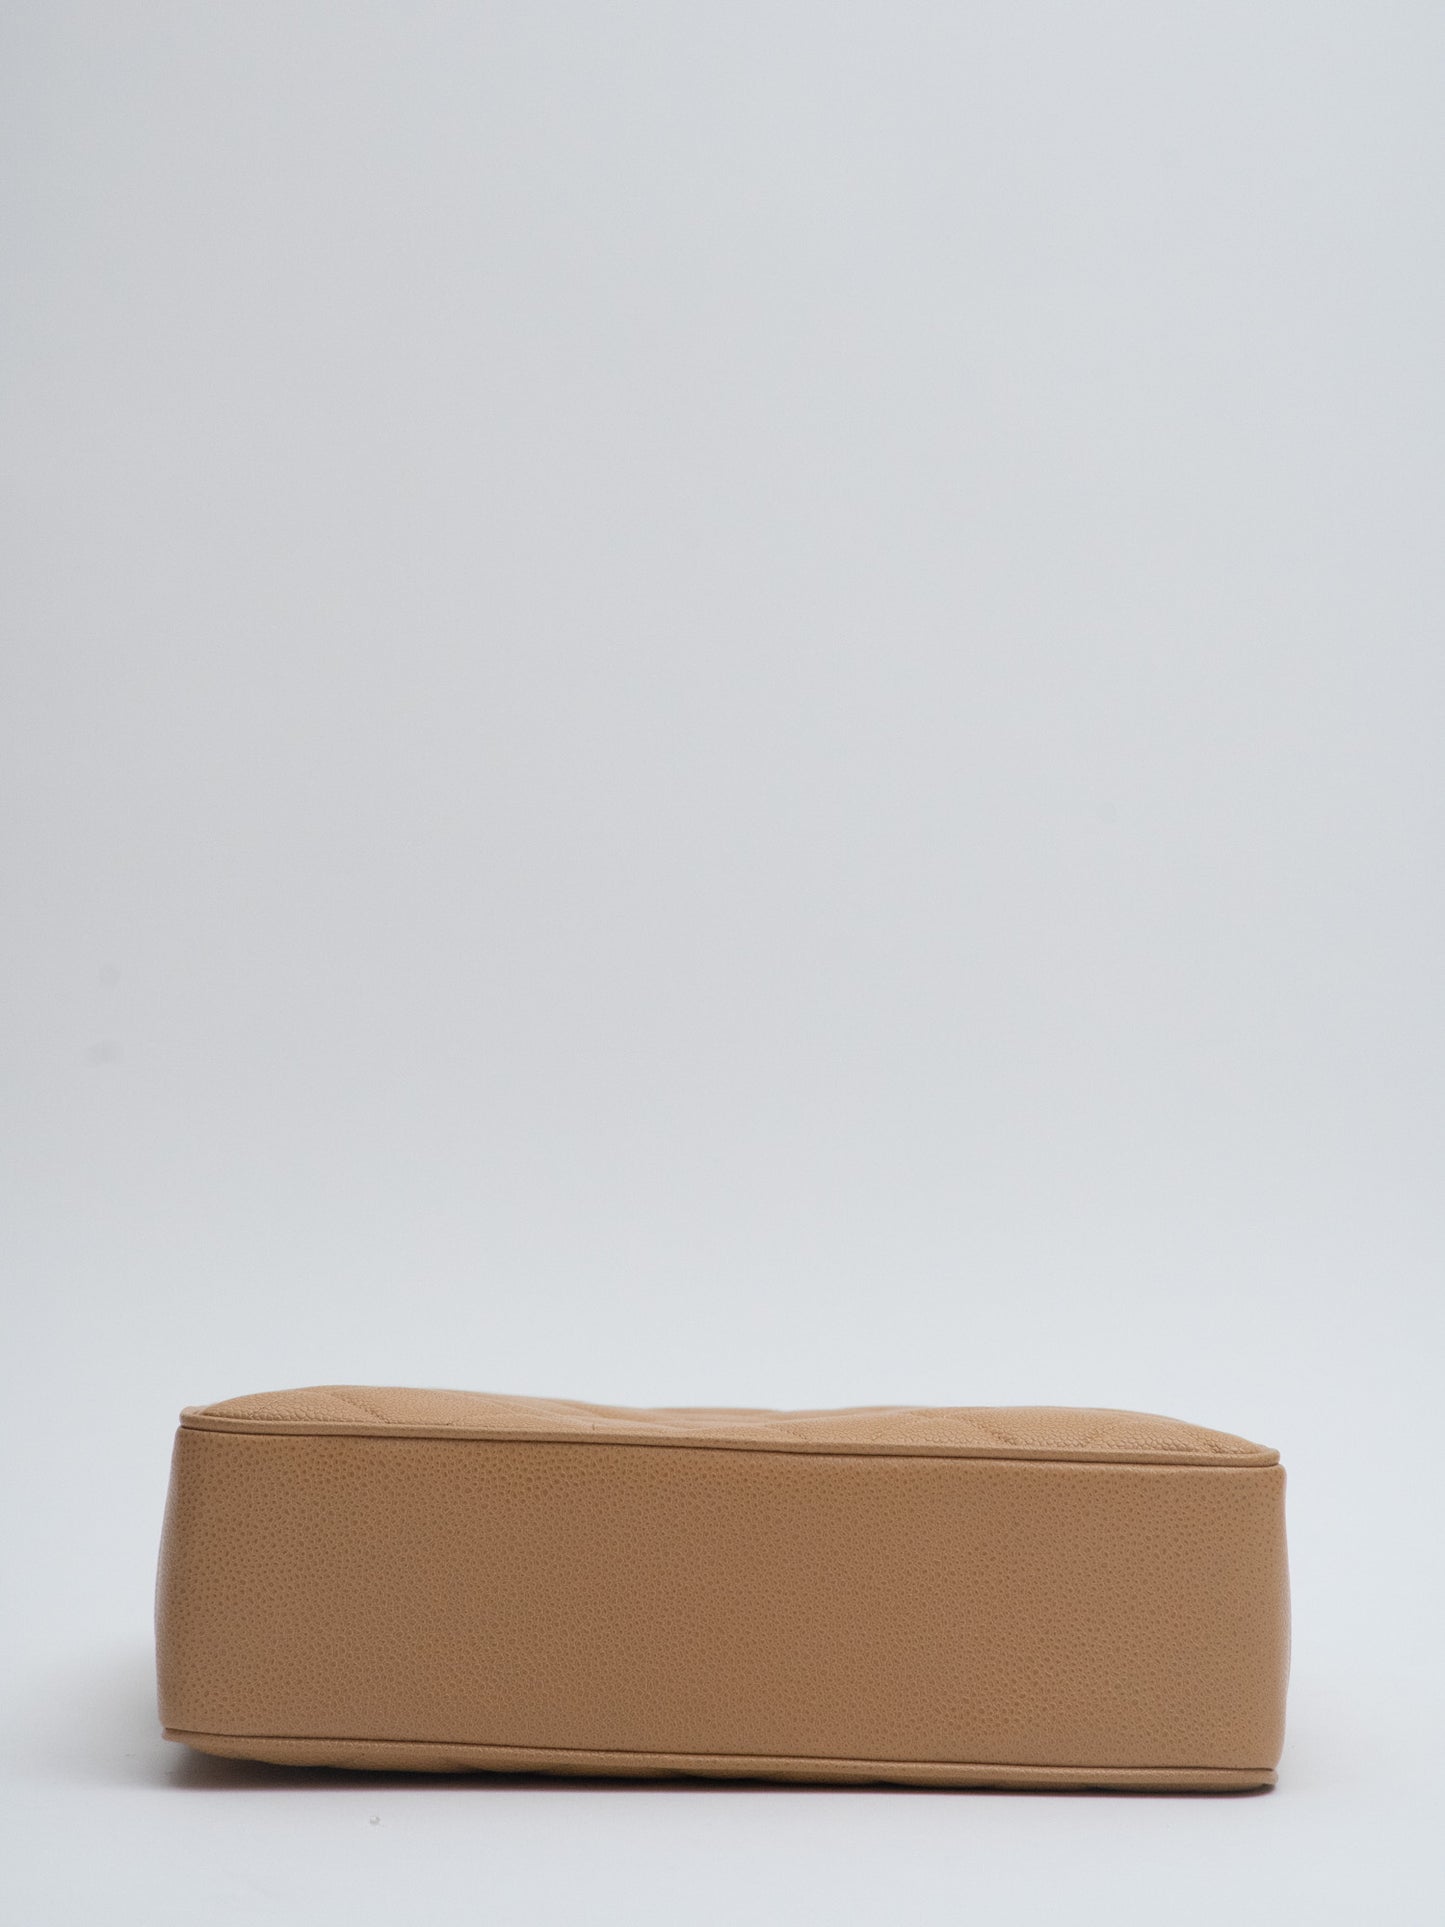 Chanel Decacoco Mark Turnlock Tote Bag Shoulder Bag Caviar Skin Beige Gold Hardware